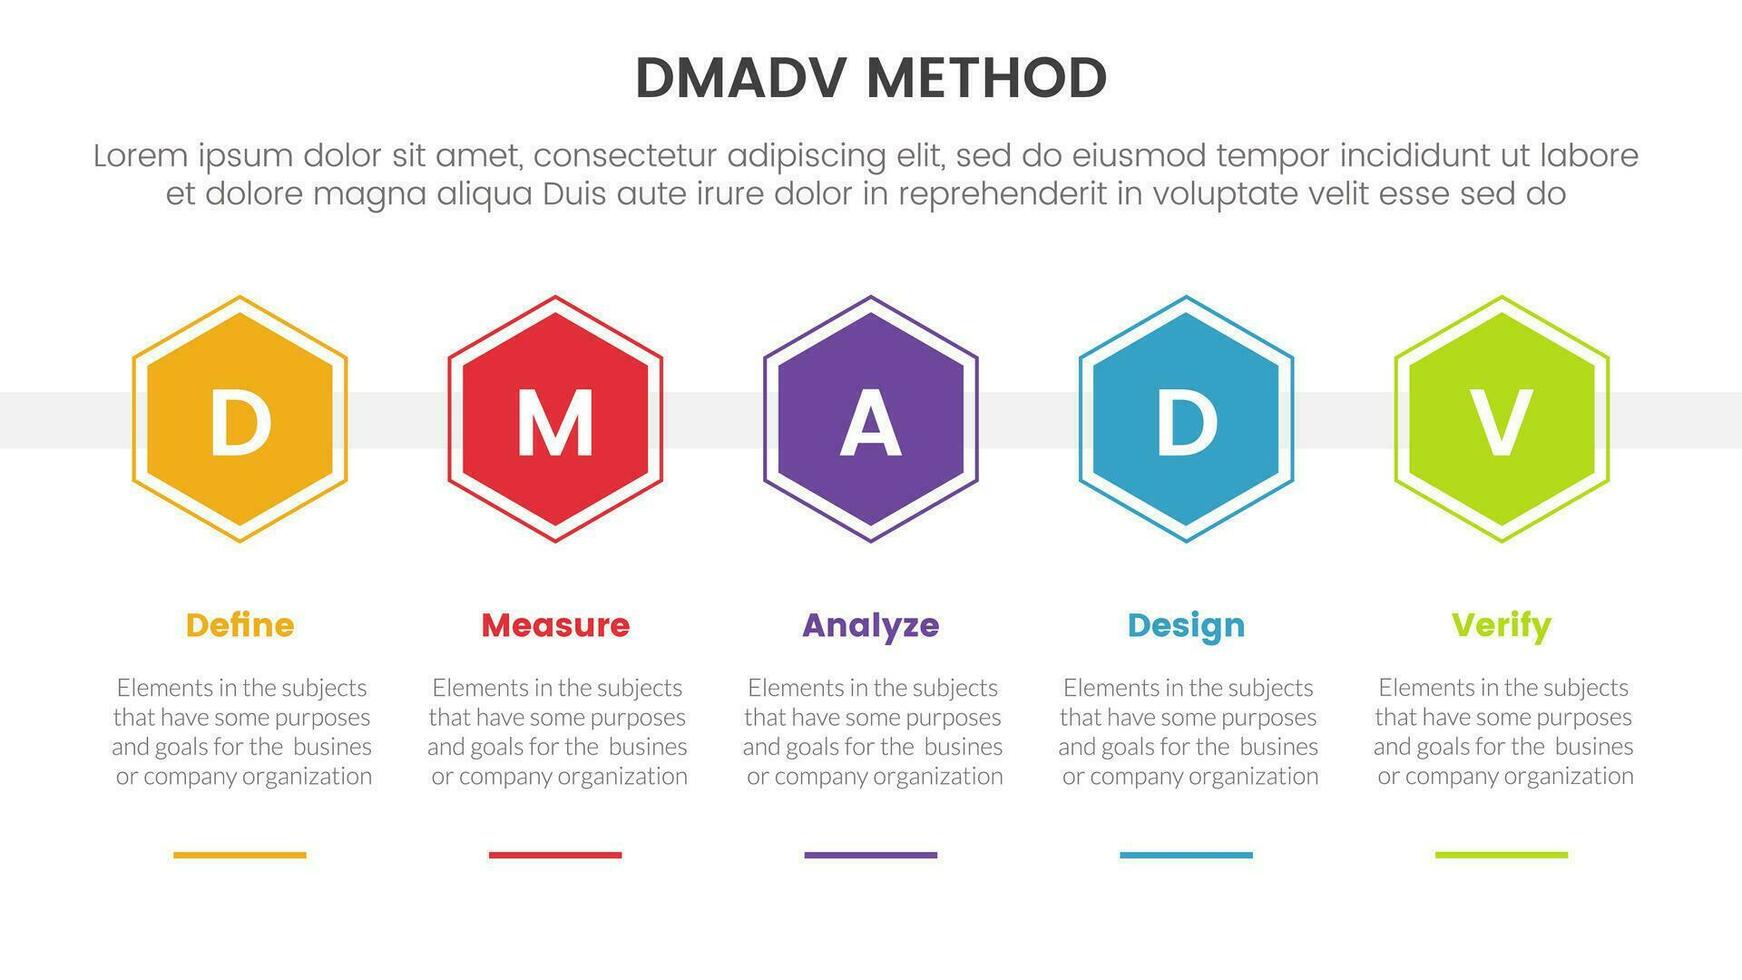 dmadv seis sigma marco de referencia metodología infografía con panal forma horizontal 5 5 punto lista para diapositiva presentación vector